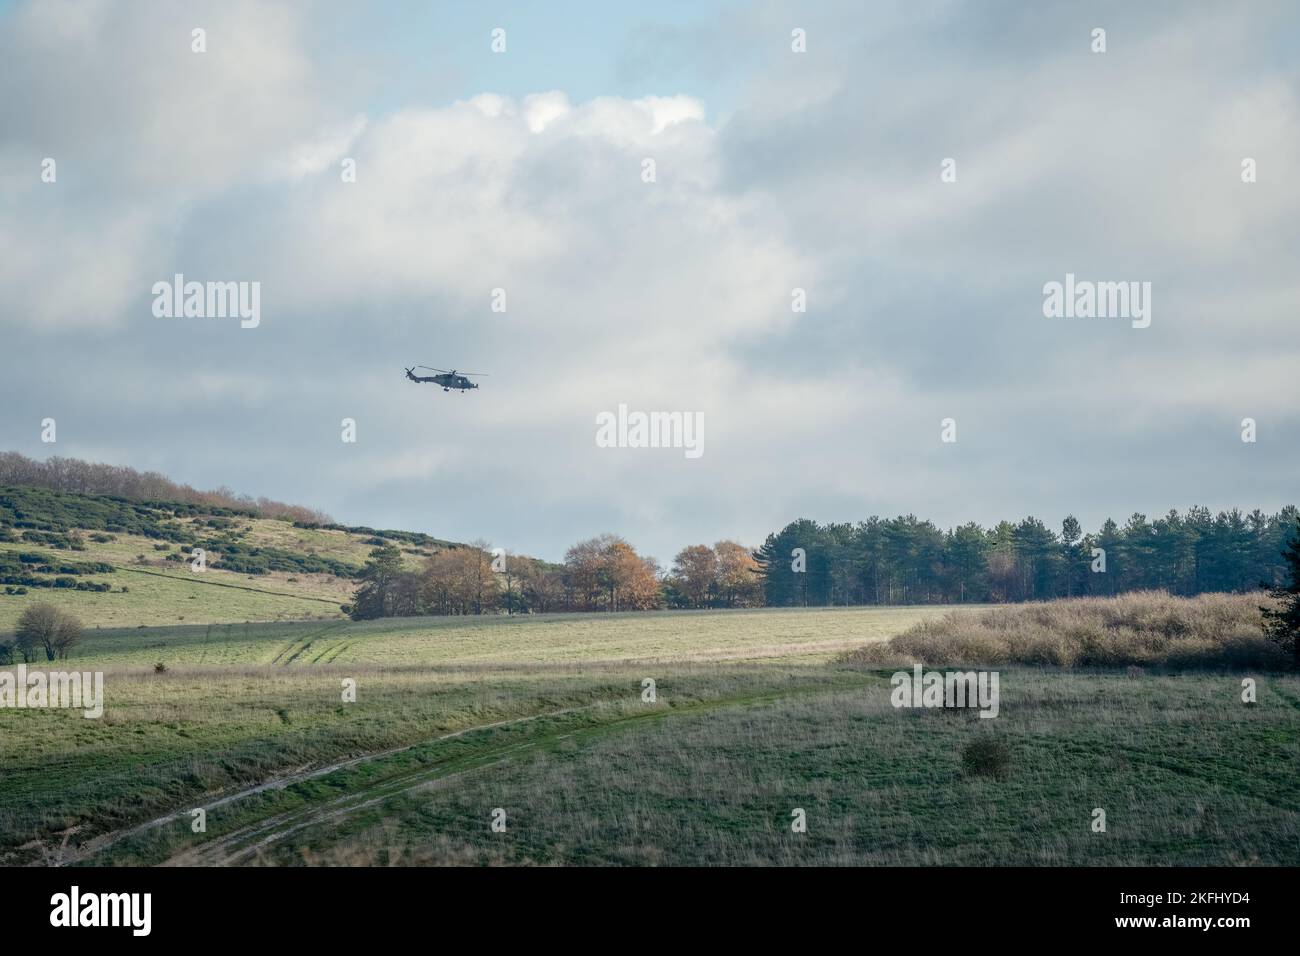 Esercito britannico AgustaWestland AW159 Wildcat AH1 elicottero volo basso su campagna aperta Foto Stock